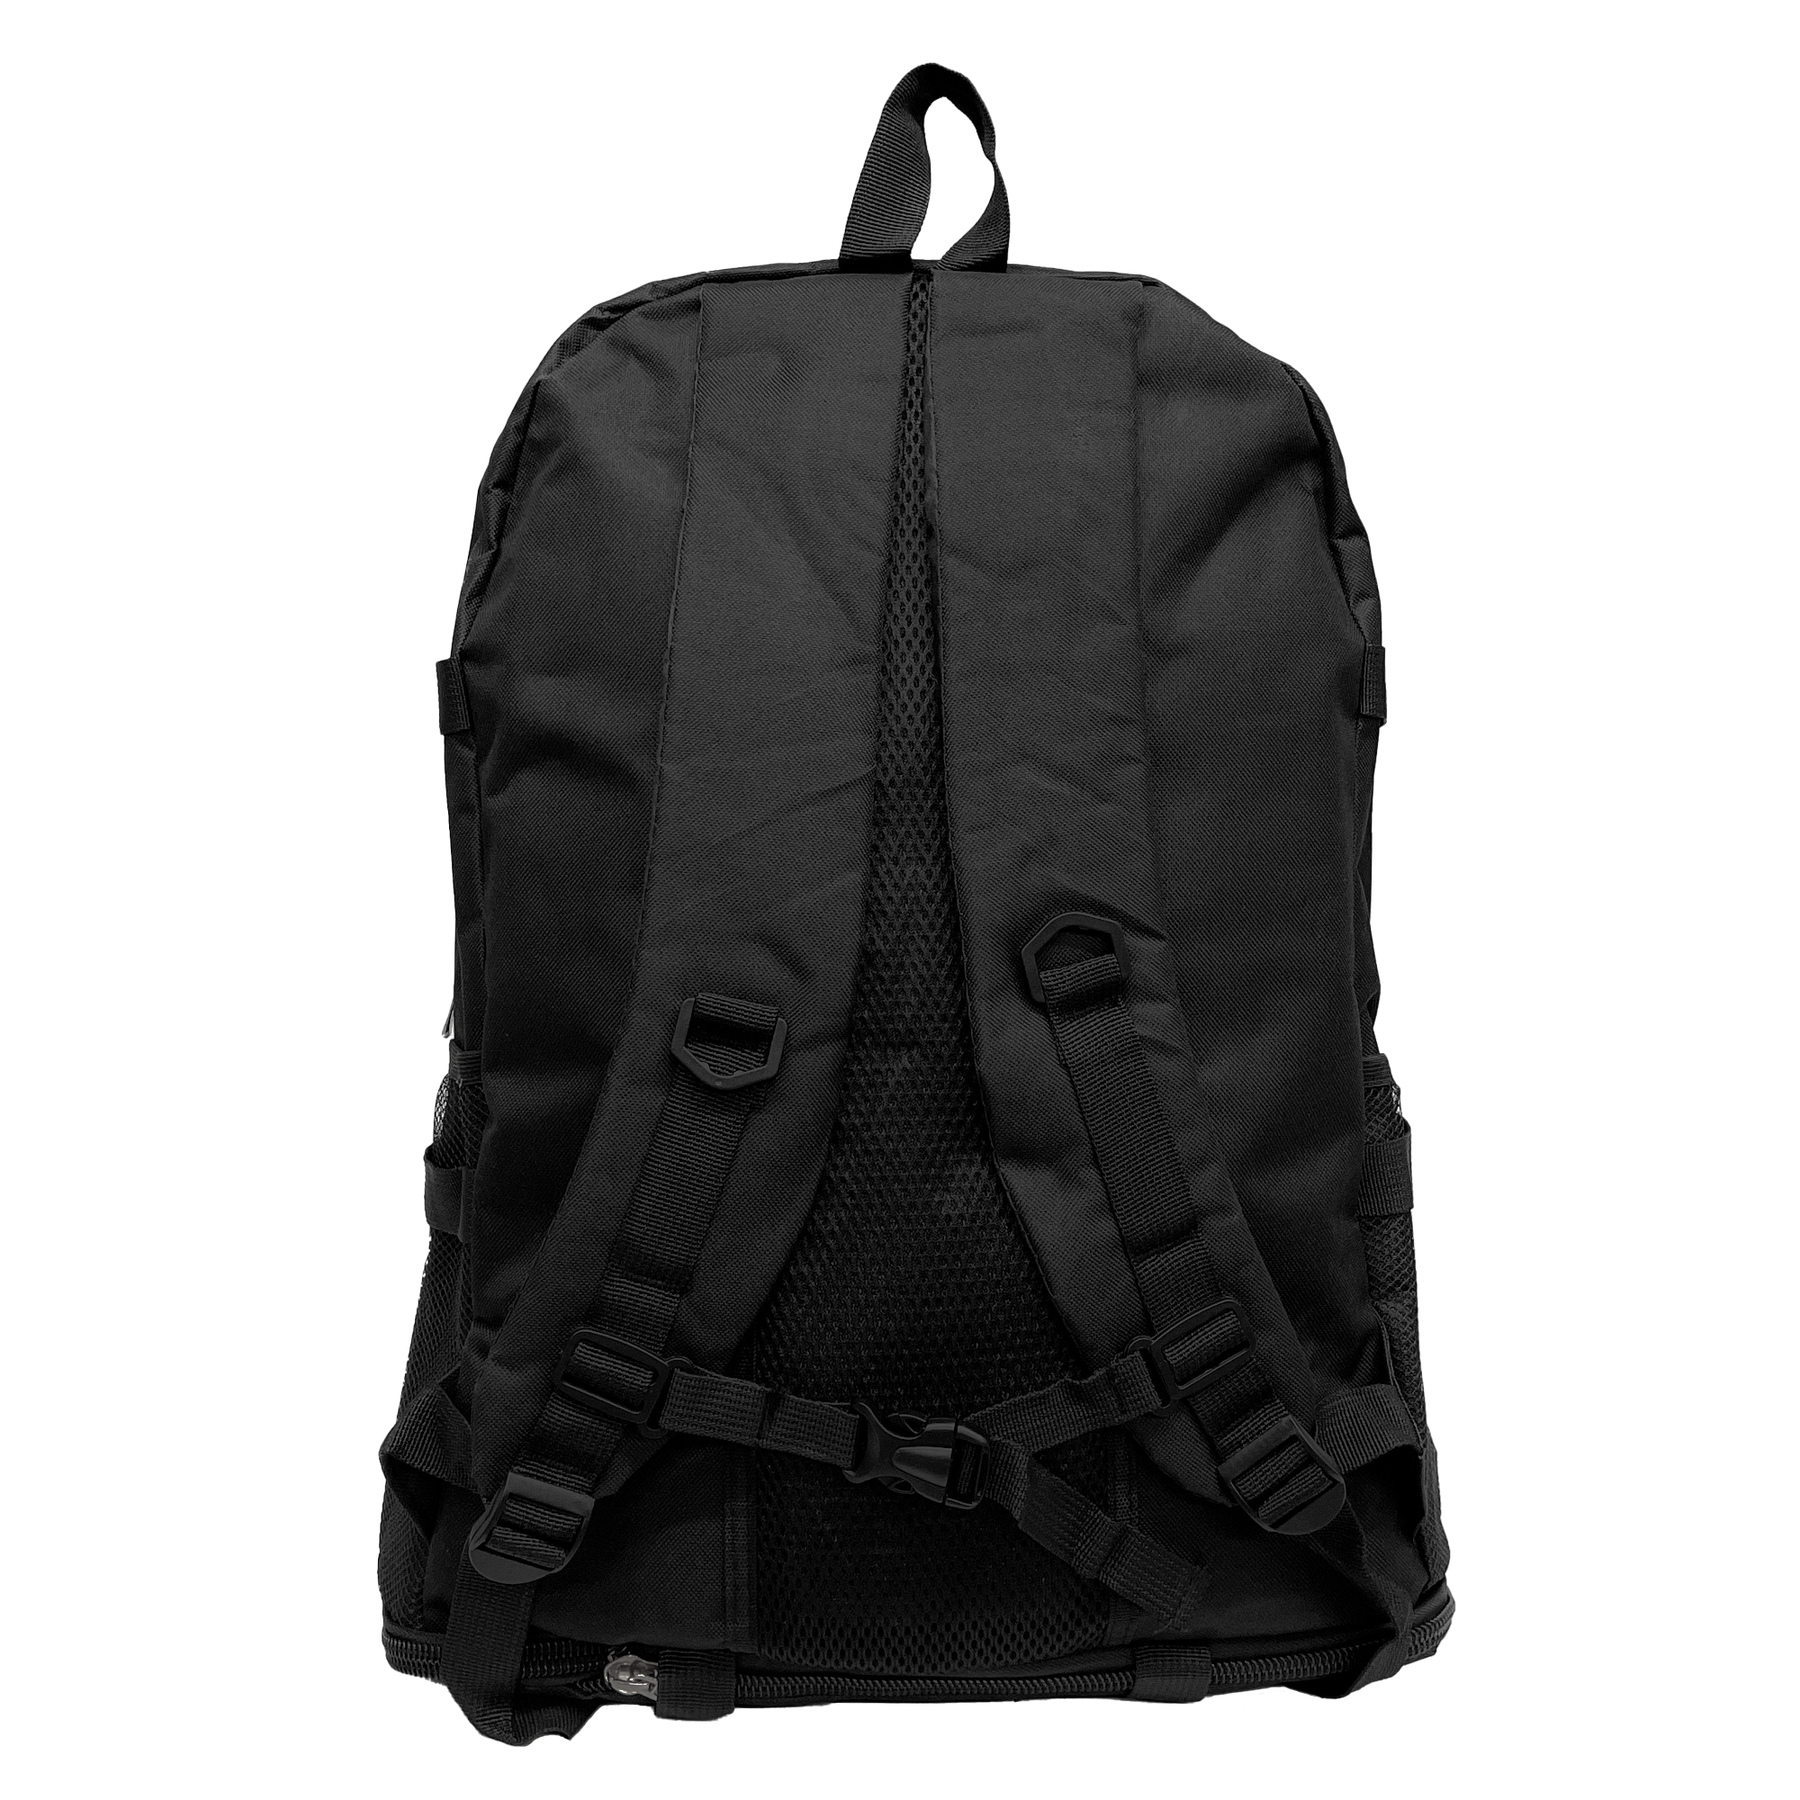 Or@mi Backpack Adventure 360: Vielseitigkeit und Komfort für jede Wanderung - 60 x 36 cm